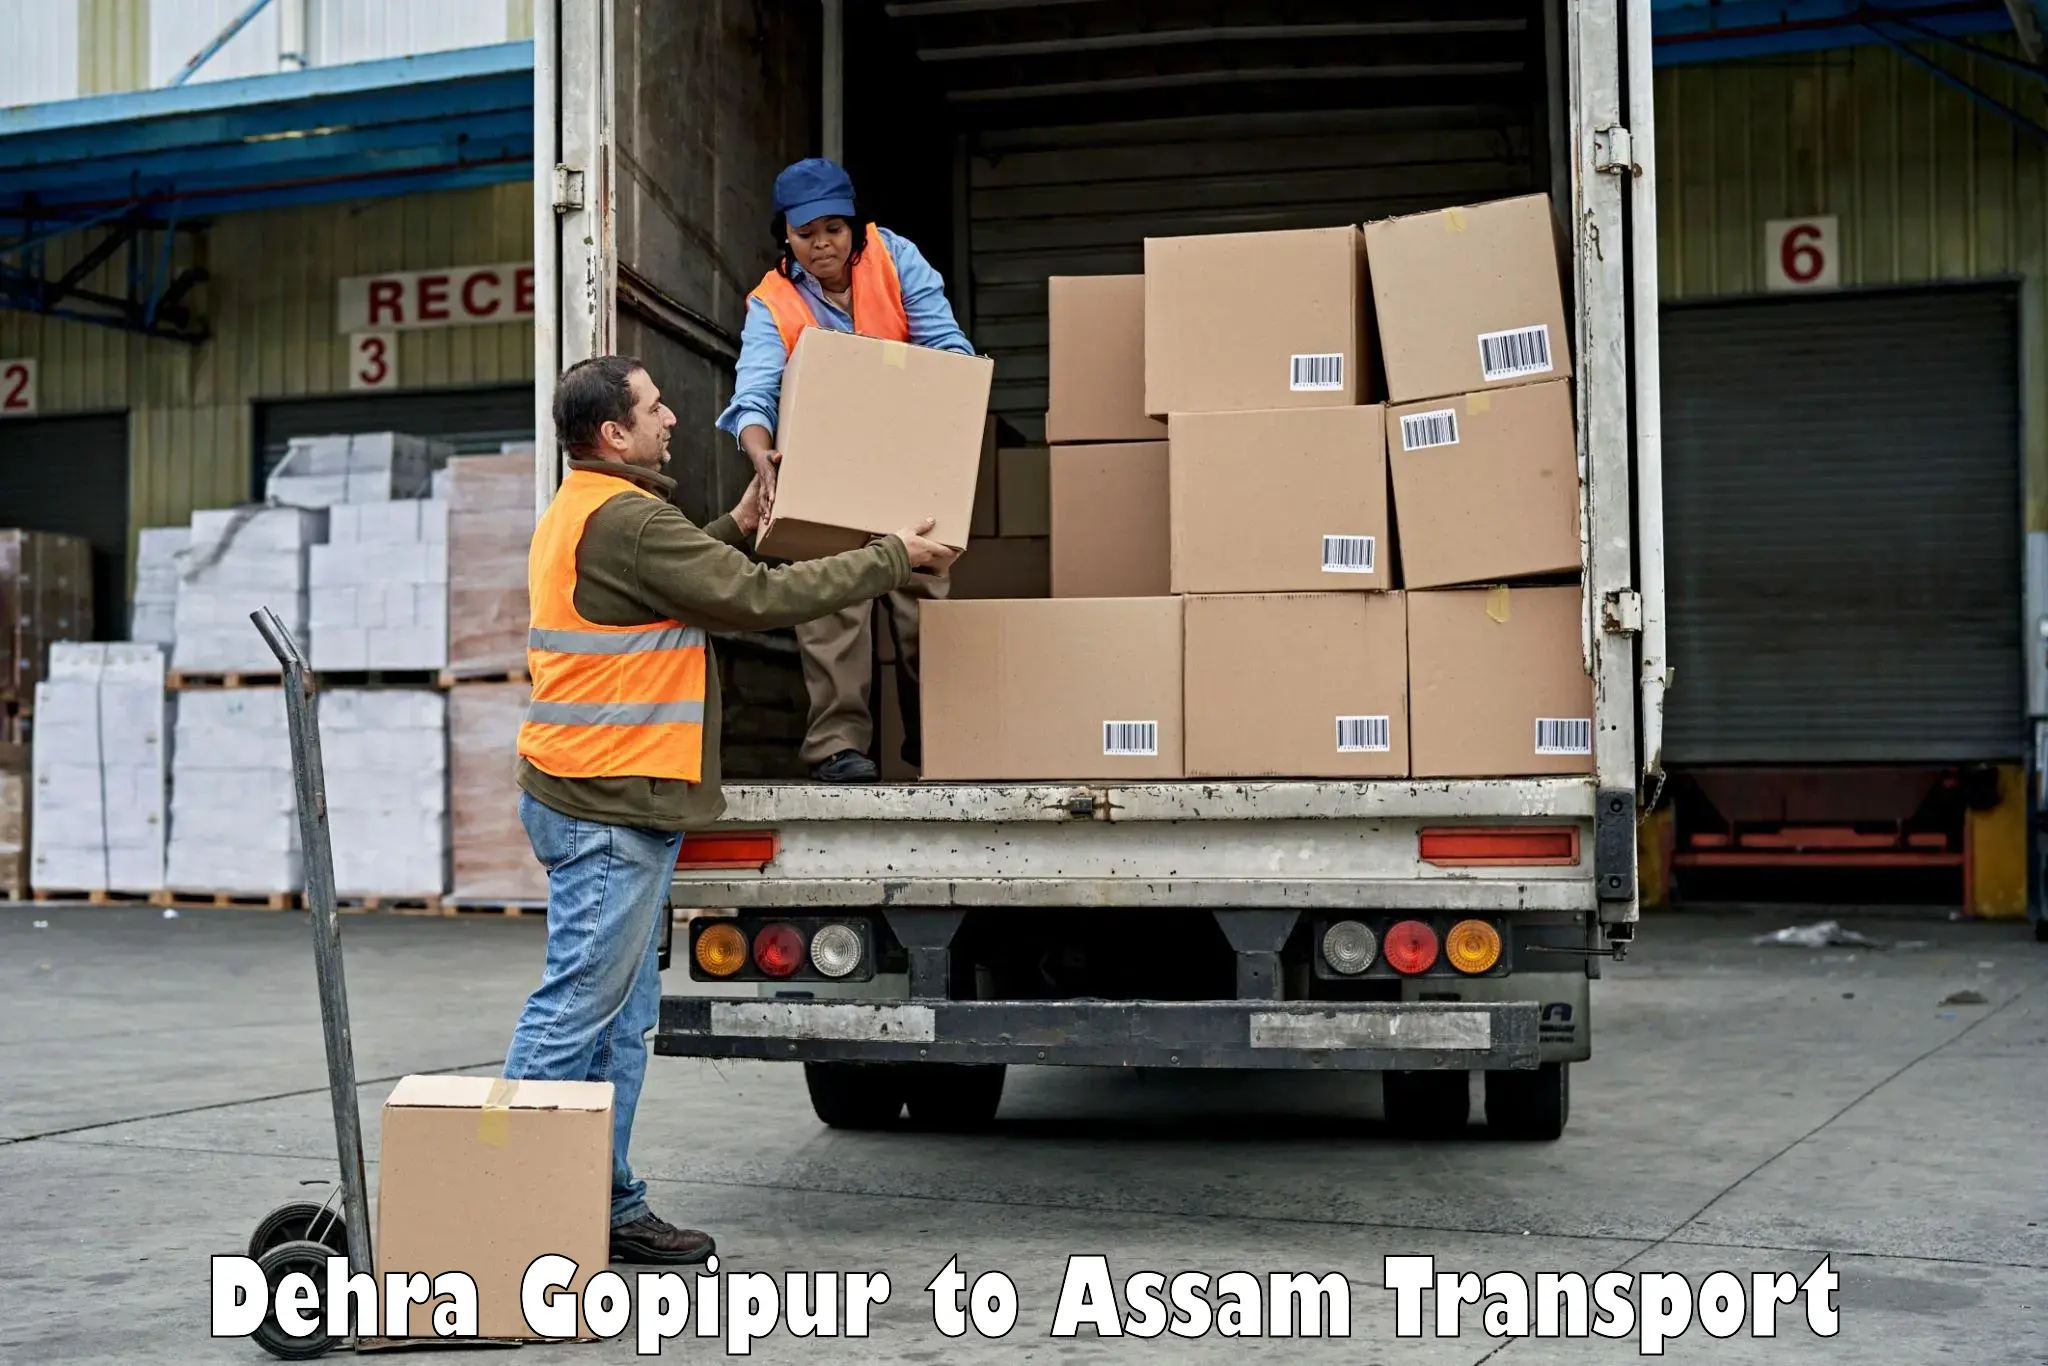 Road transport online services Dehra Gopipur to Assam